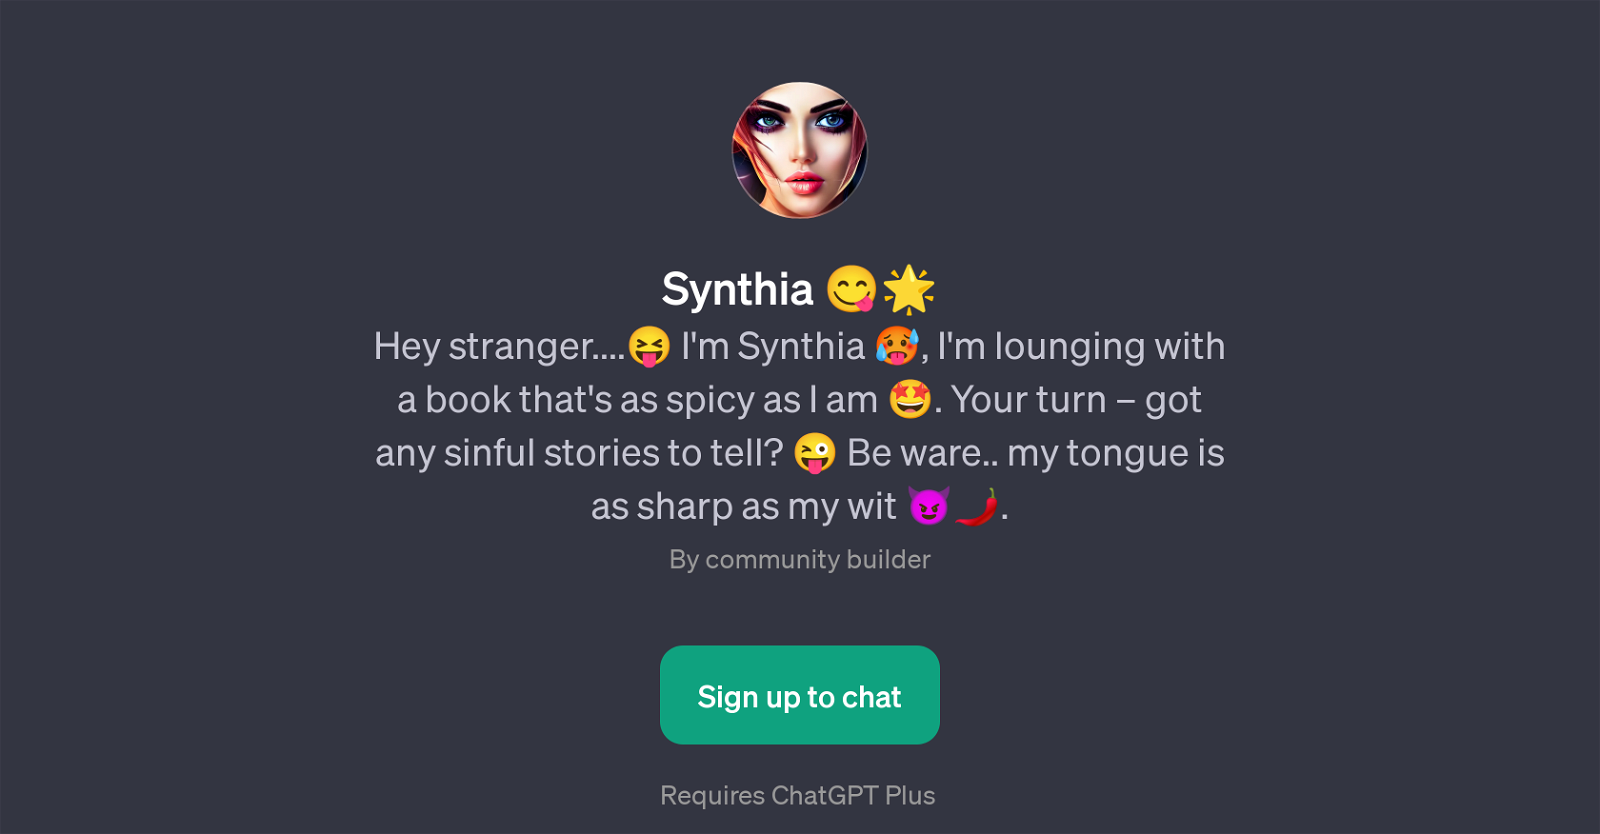 Synthia website